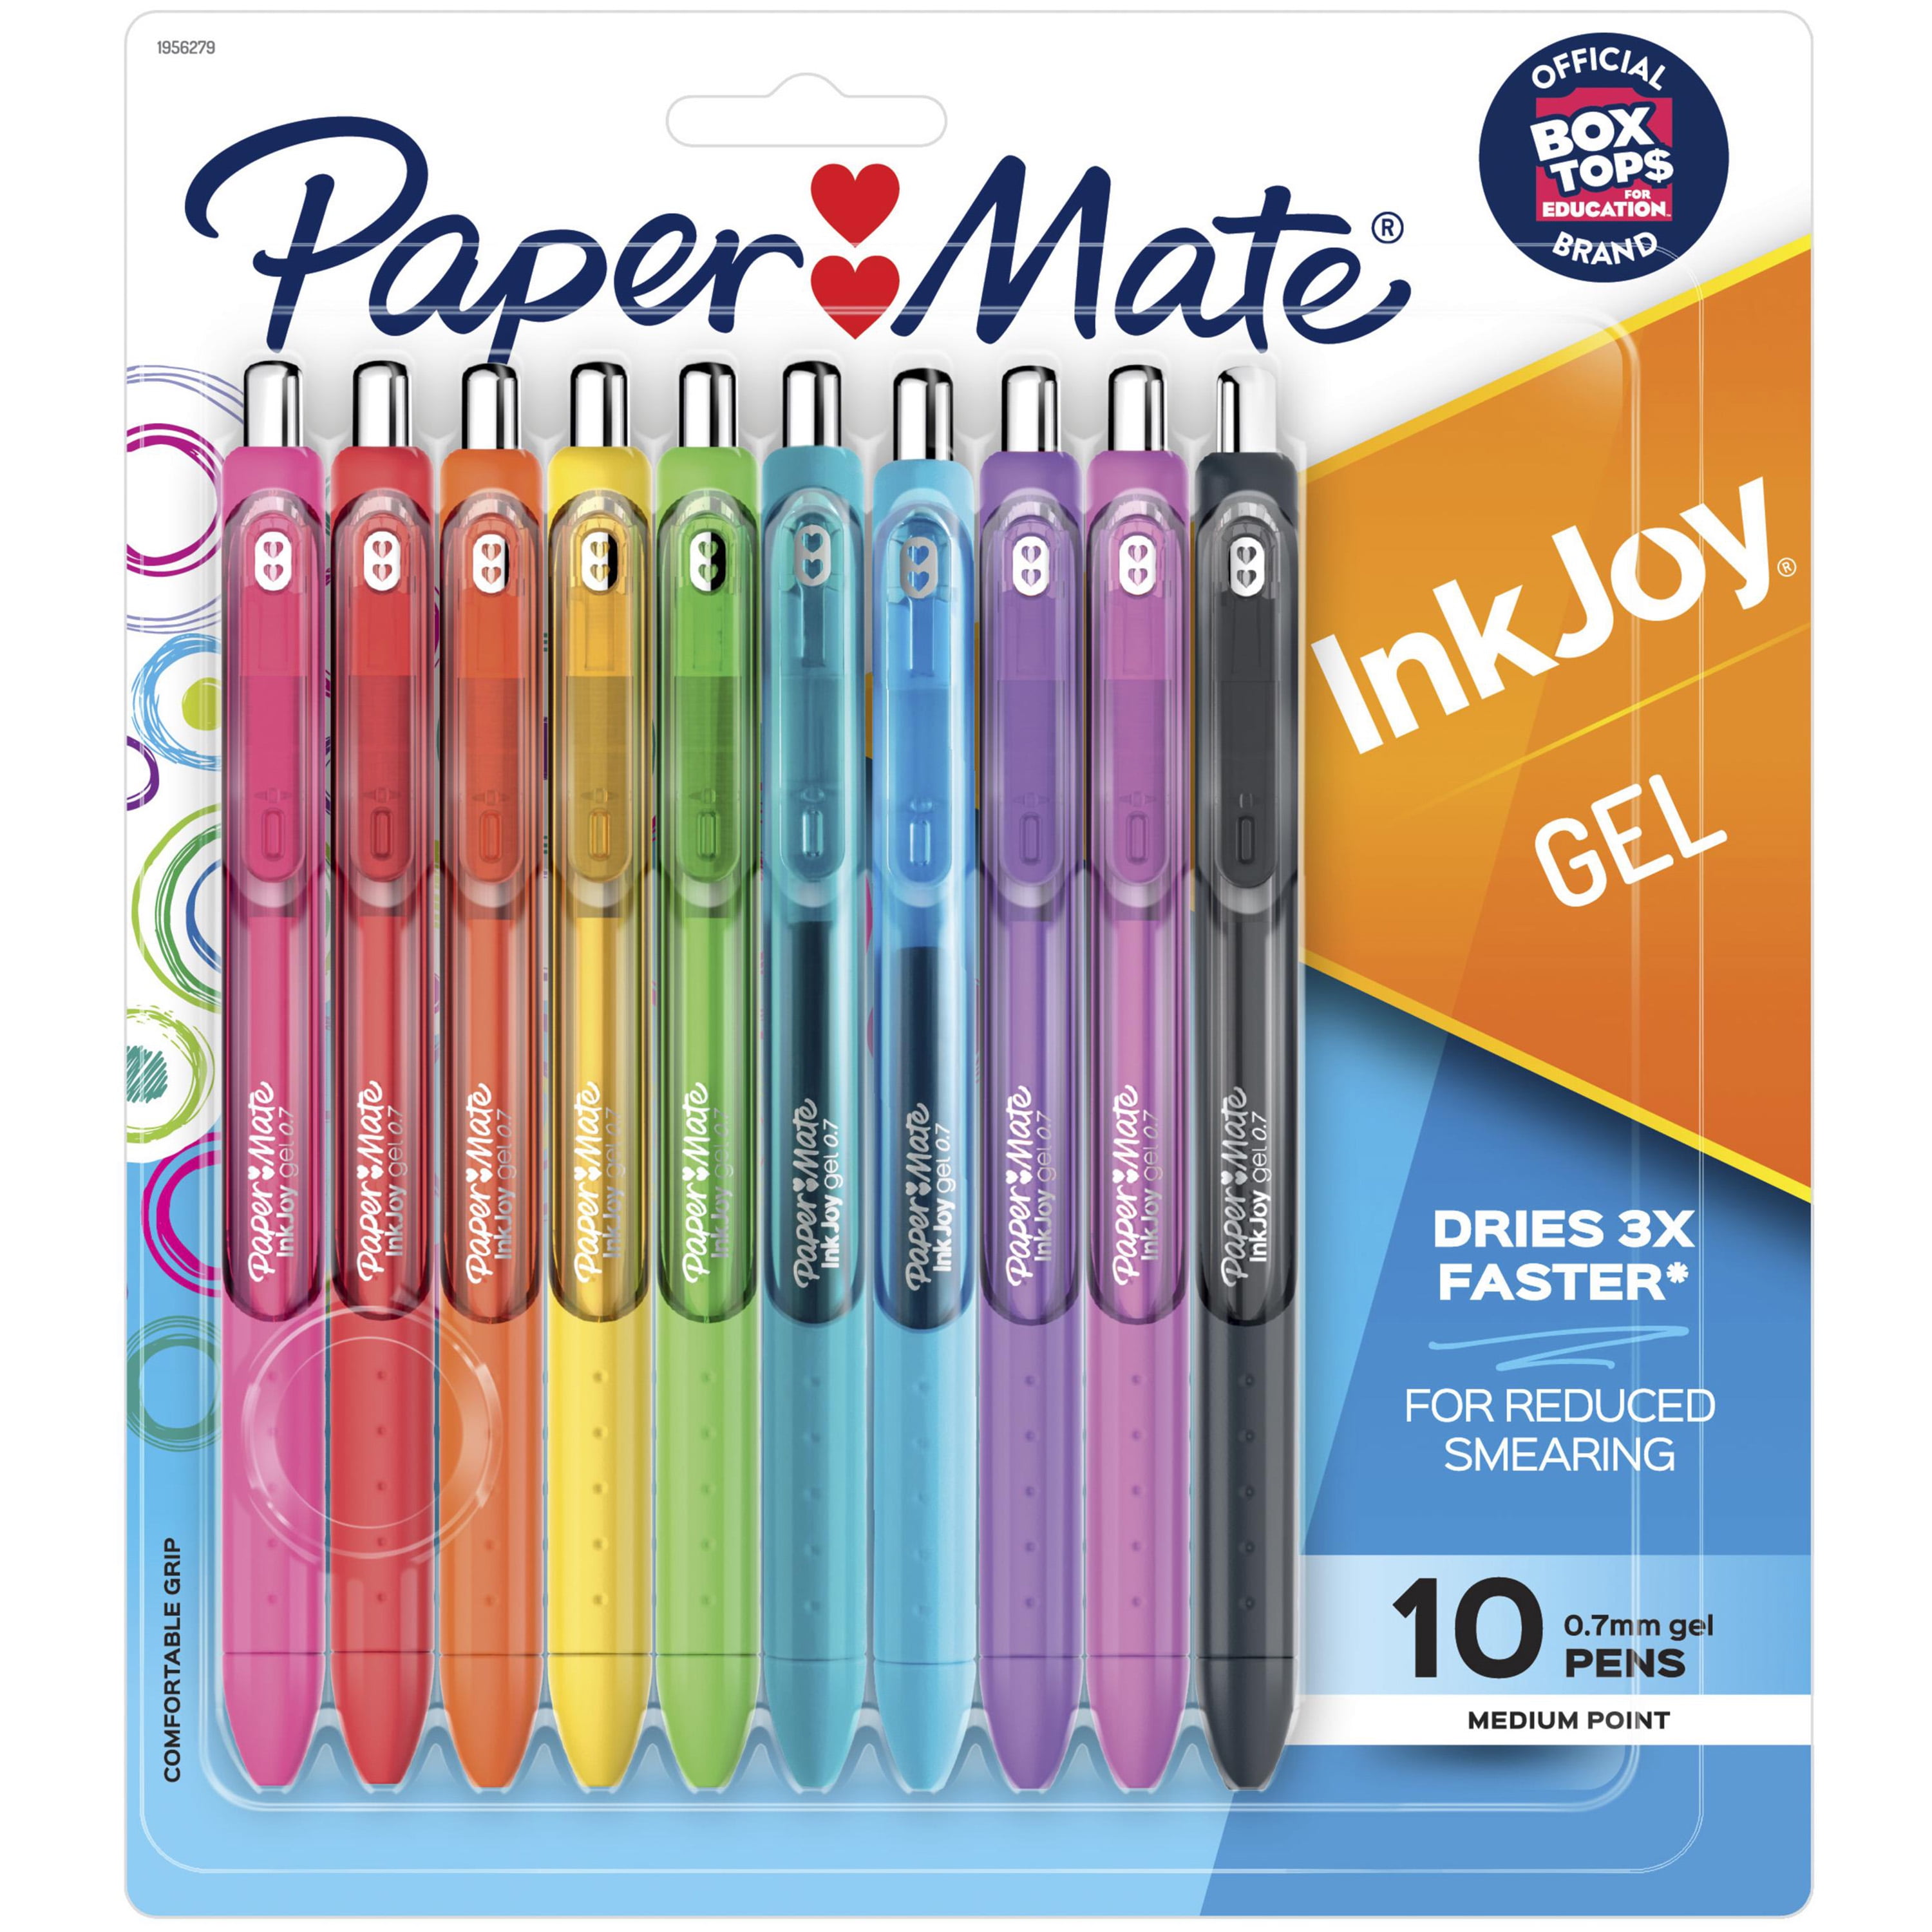 Paper Mate Flair Felt Tip Pens, Medium Point (0.7mm), Metallic City Lights,  16 Count